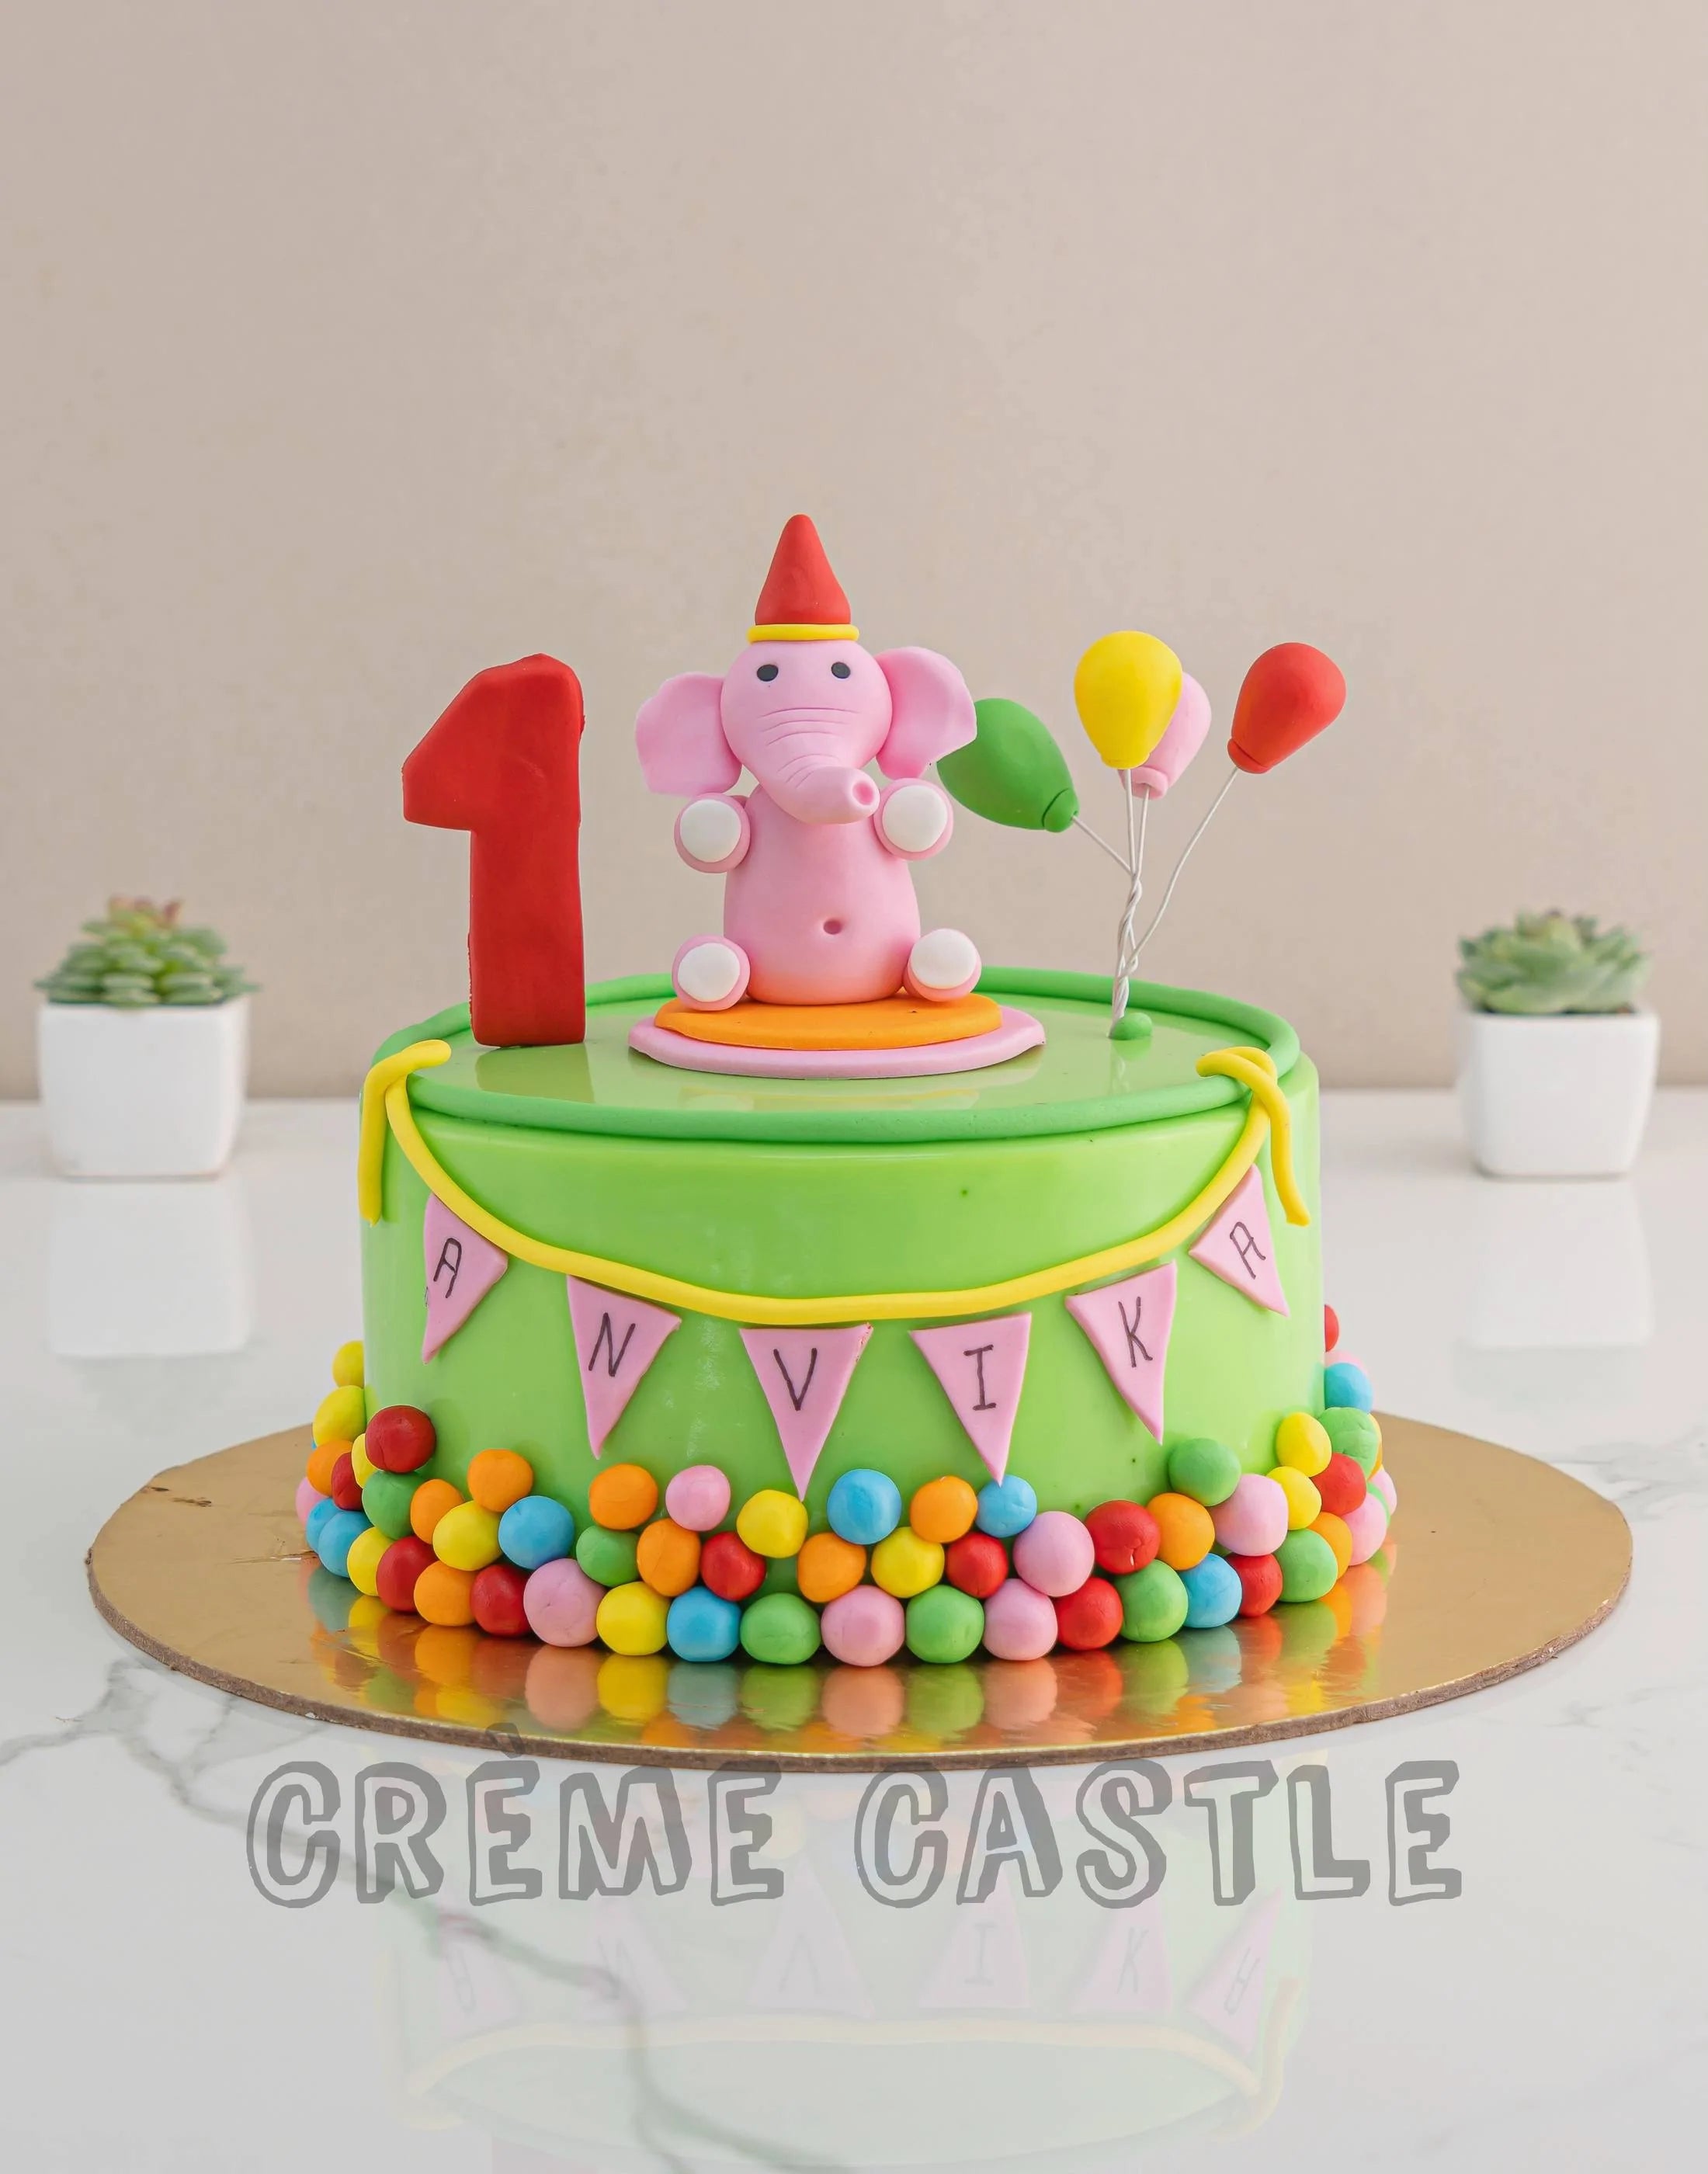 Elephant Cake Design Images (Elephant Birthday Cake Ideas) | Elephant  birthday cakes, Elephant cakes, Elephant birthday